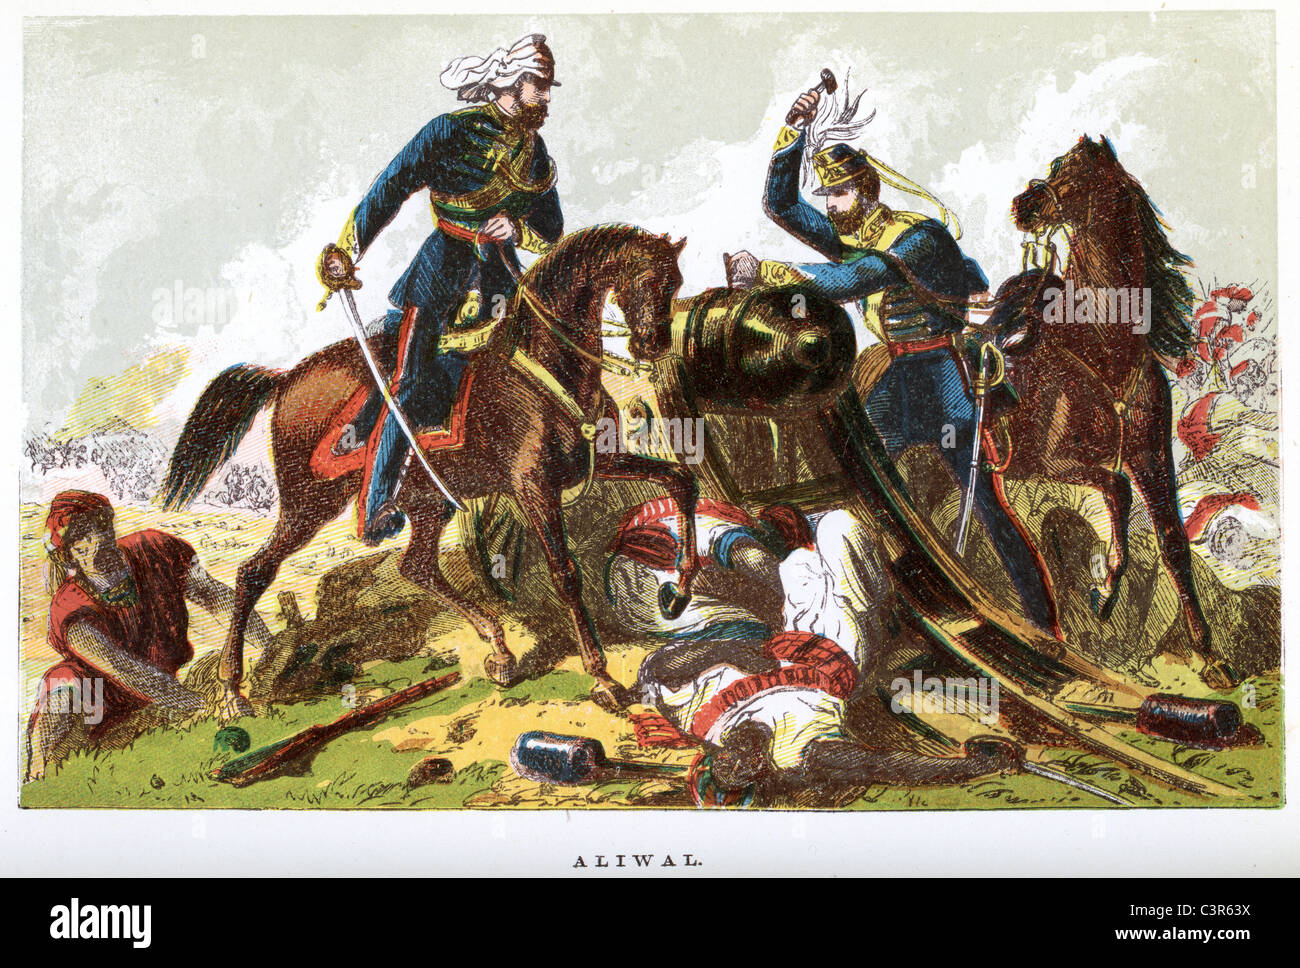 La bataille se déroula d'Aliwal de le 28 janvier 1846 entre les Britanniques et les Sikhs. Banque D'Images